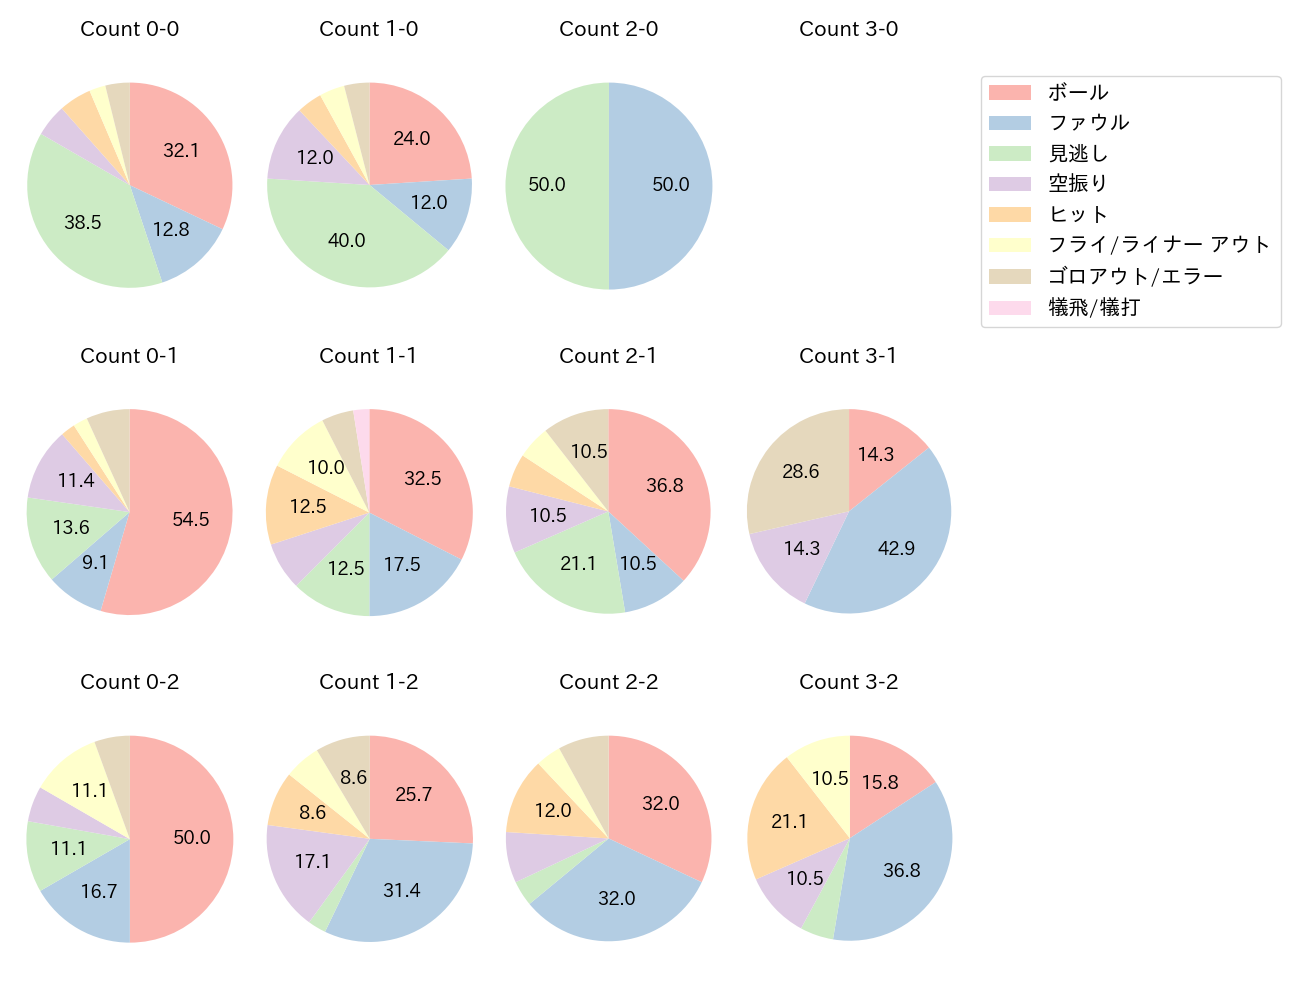 松原 聖弥の球数分布(2021年4月)